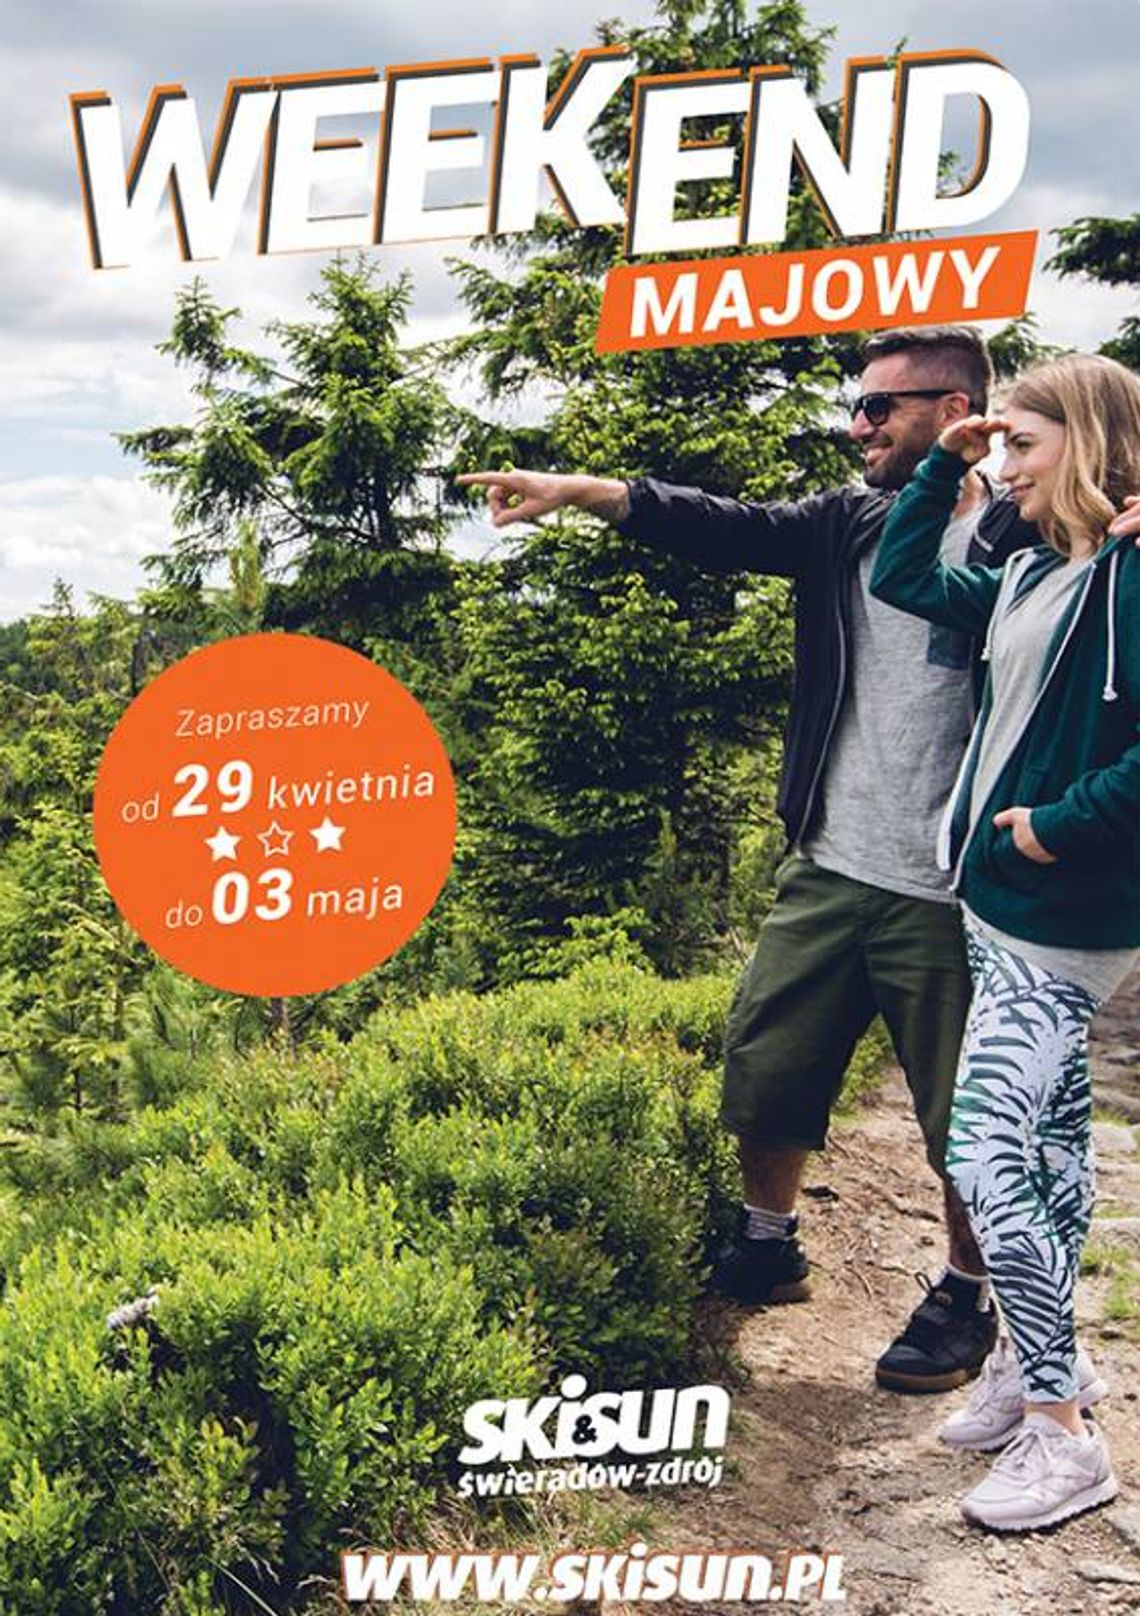 SKI&SUN Świeradów Zdrój zaprasza na Weekend Majowy